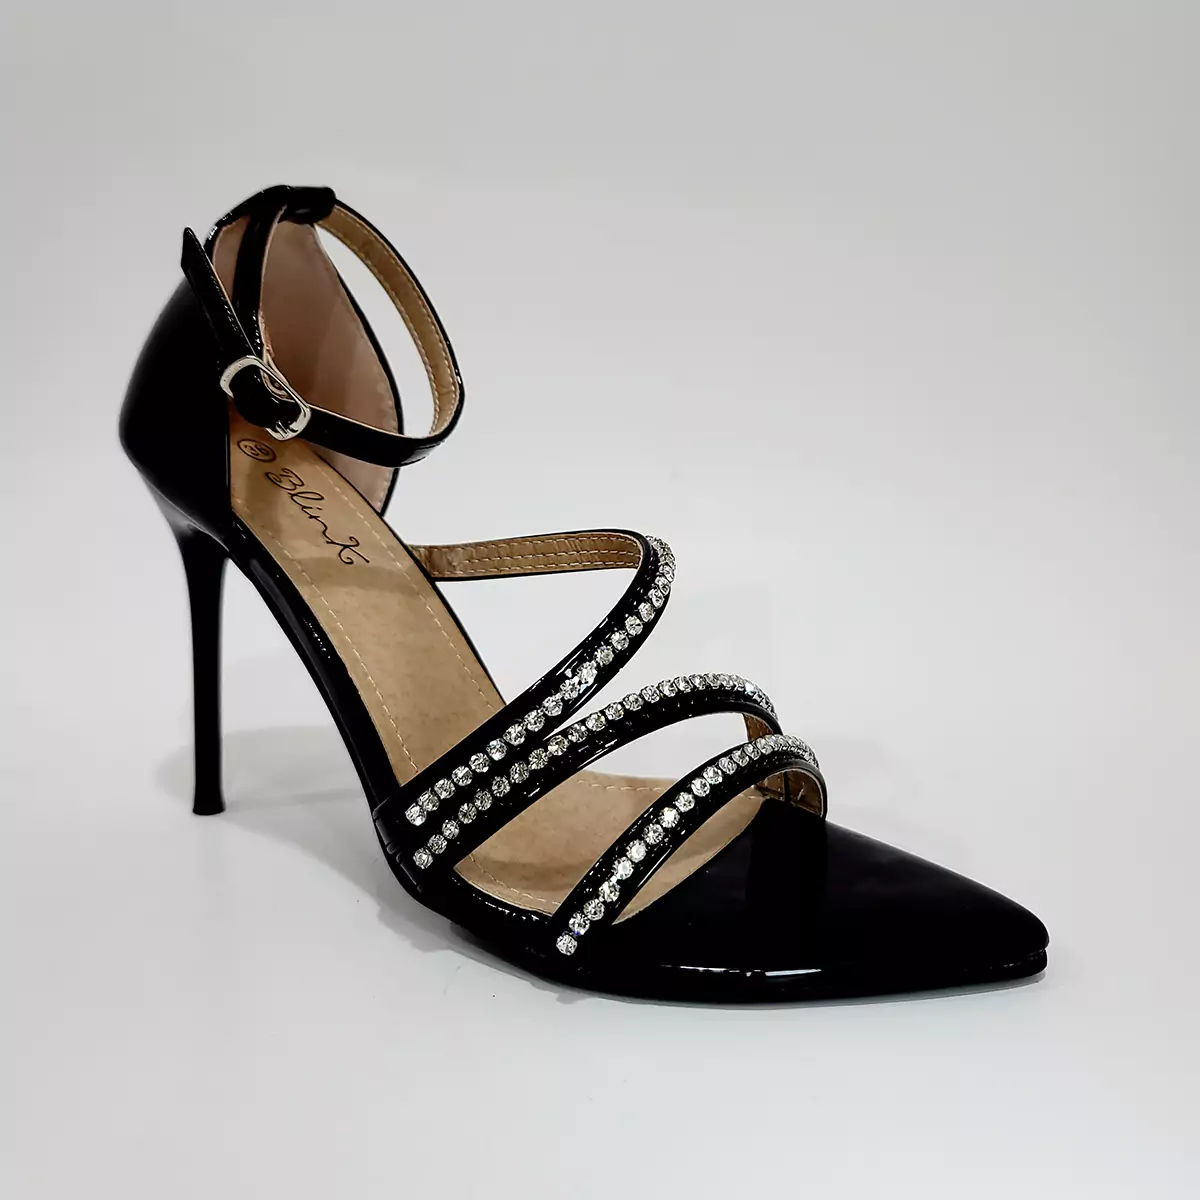 Zapatos de tacón, negros con detalles plateados